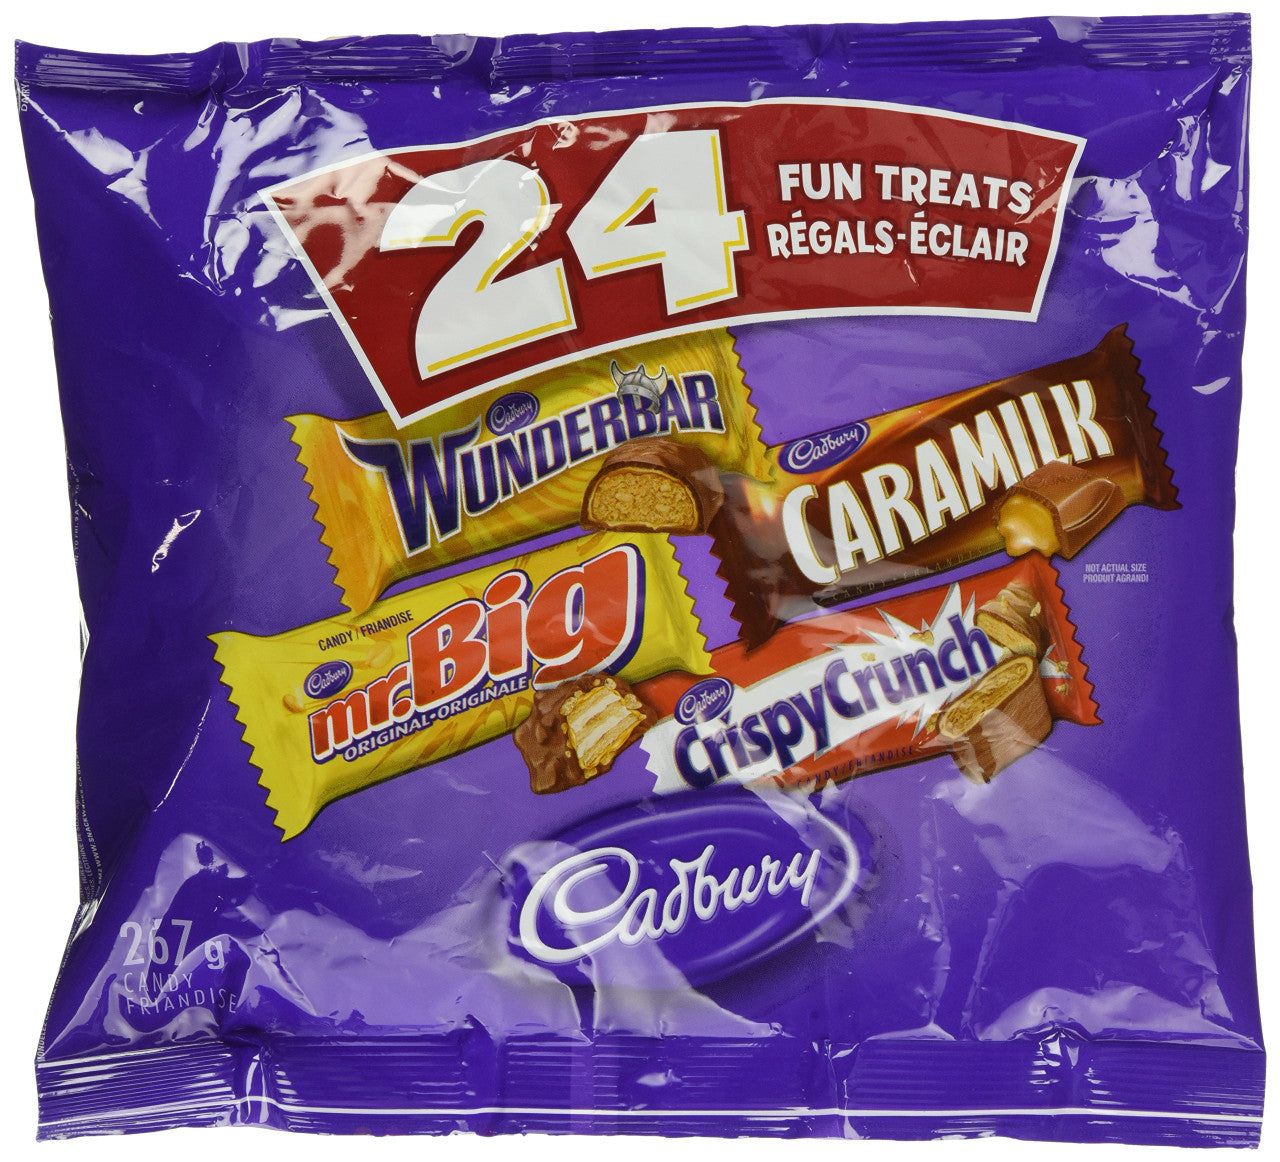 Cadbury Halloween Chocolate, Wunderbar, Mr. Big, Caramilk, Crispy Crunch, 24pk, 267g/9.31 oz. {Imported from Canada}